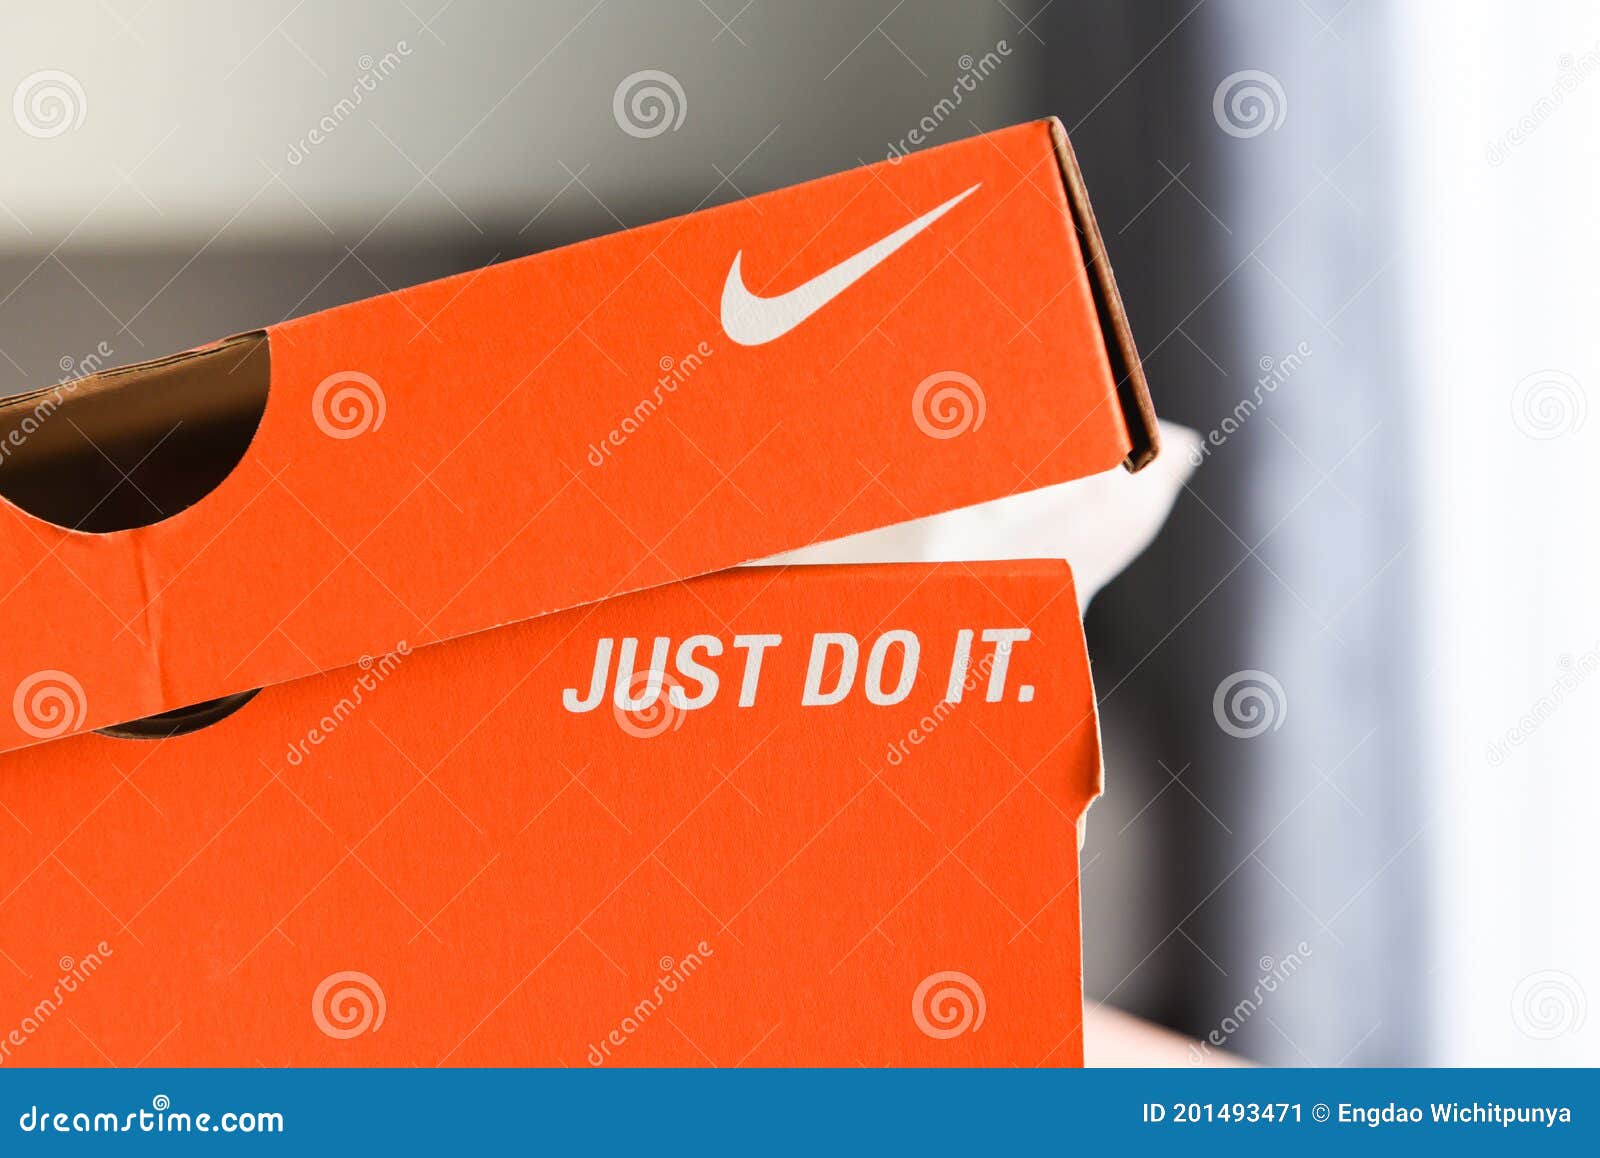 Caja De Zapatillas Nike Con Sólo Hacer Y El Logo De Nike En El Cuadro  Naranja En La Tienda Foto editorial - Imagen de ropa, gimnasio: 201493471